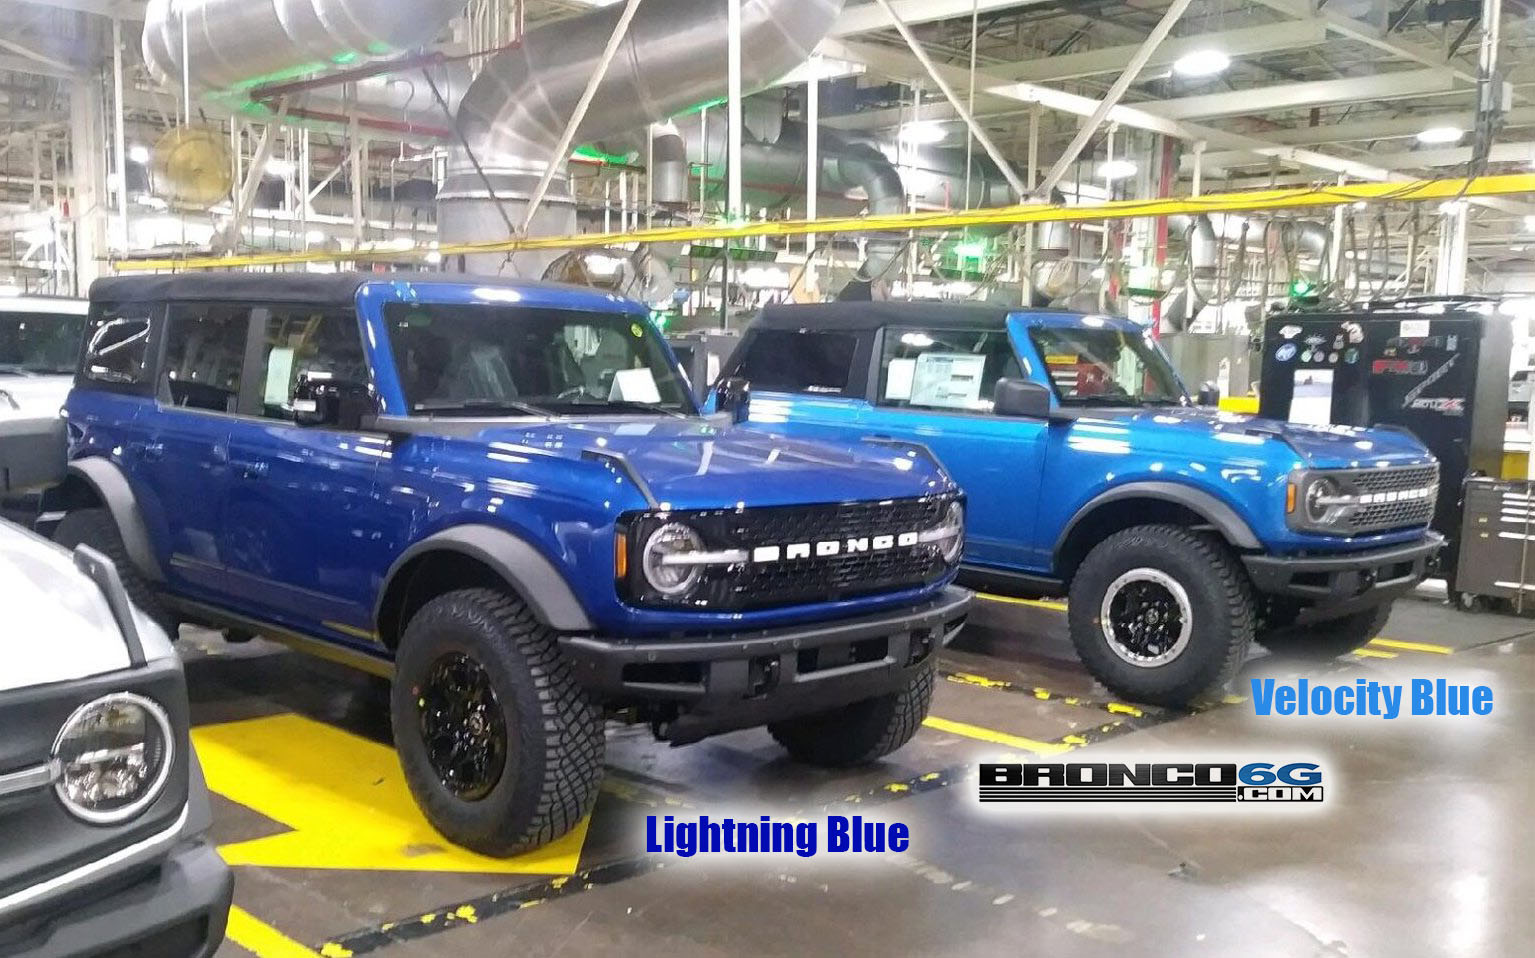 2021 Bronco Velocity Blue vs Lightning Blue.jpg